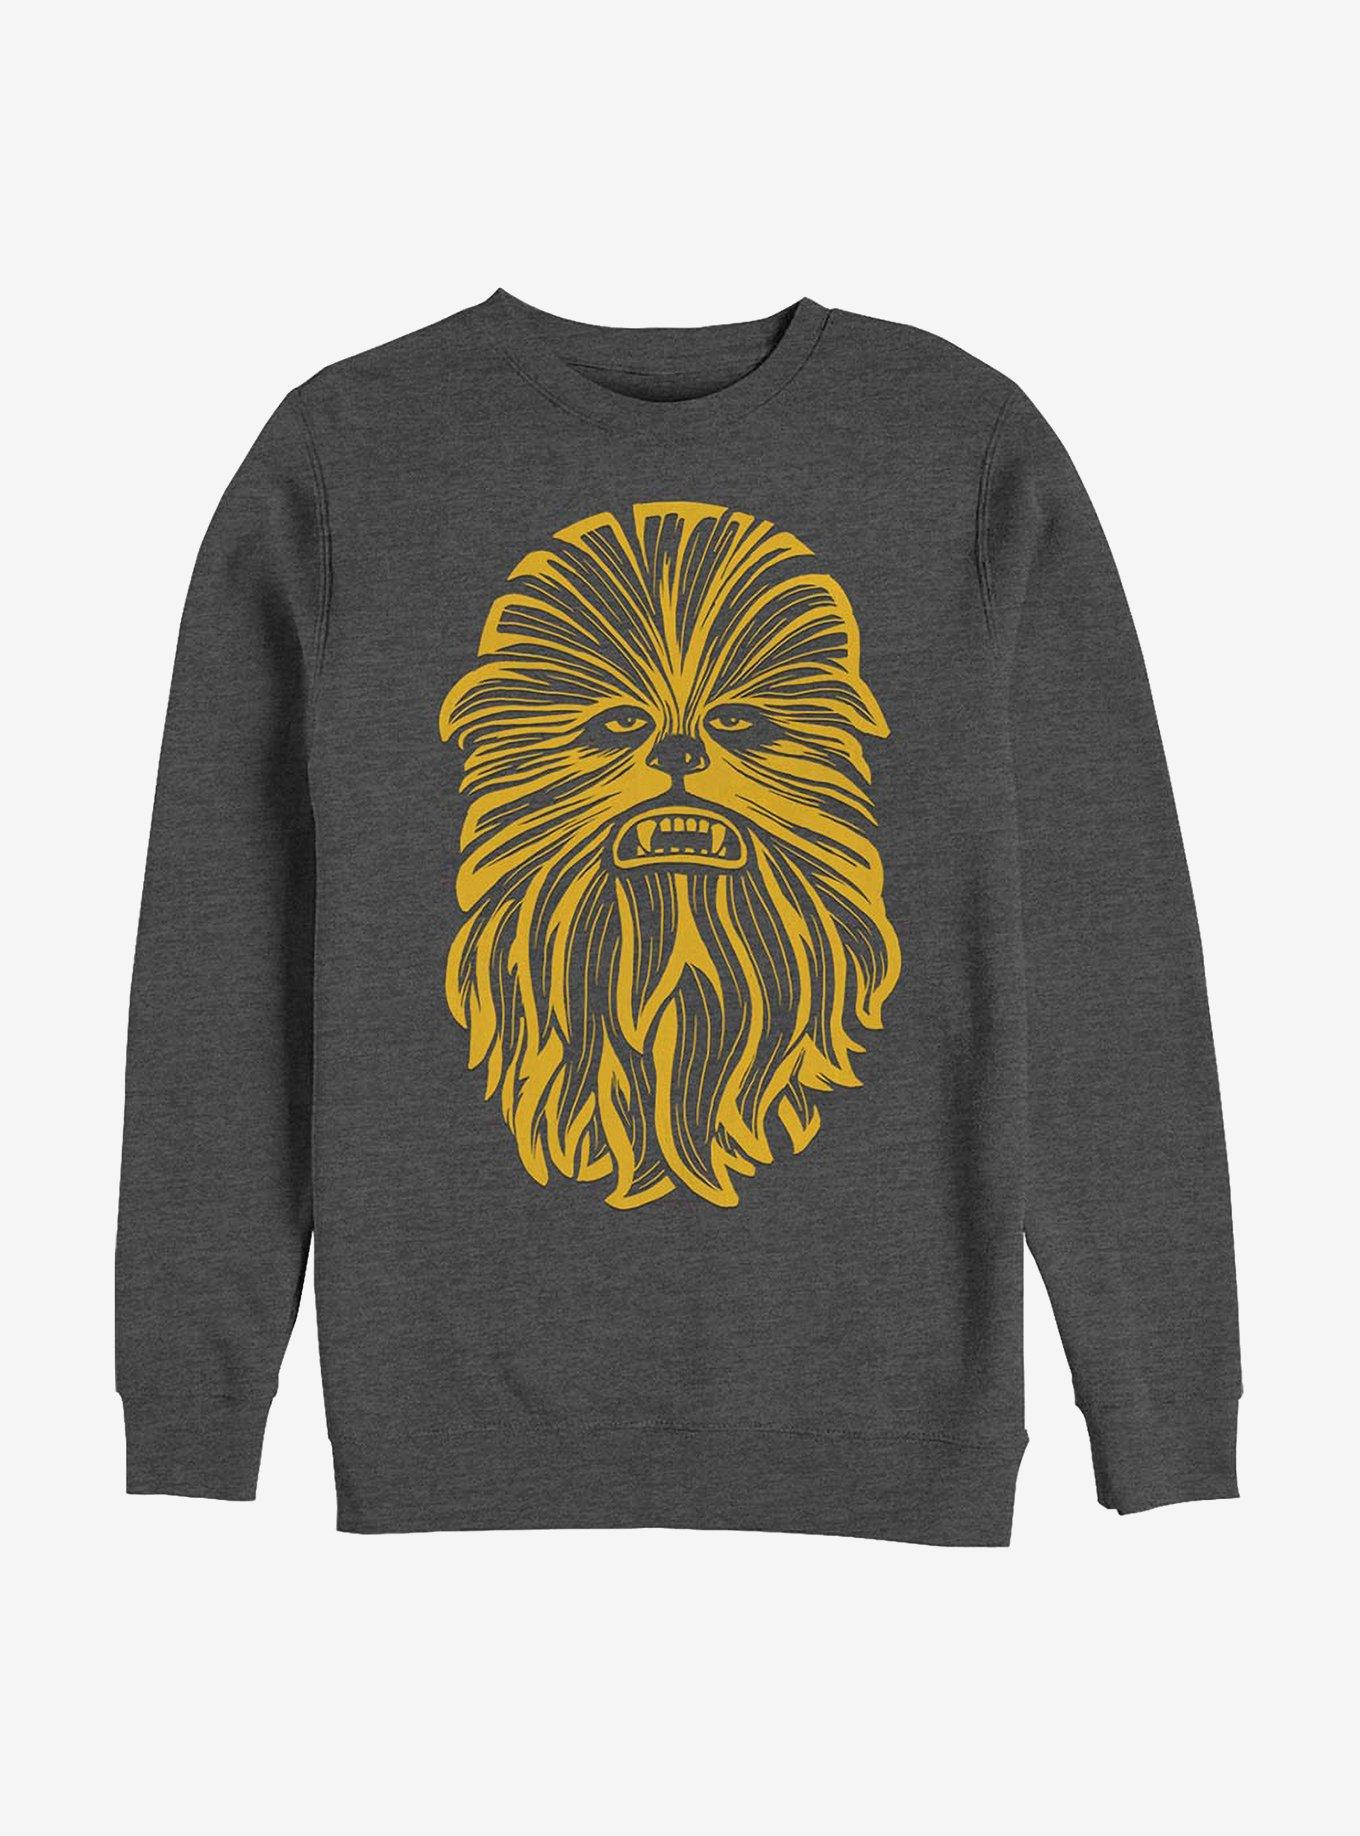 Star Wars Chewie Time Crew Sweatshirt, , hi-res